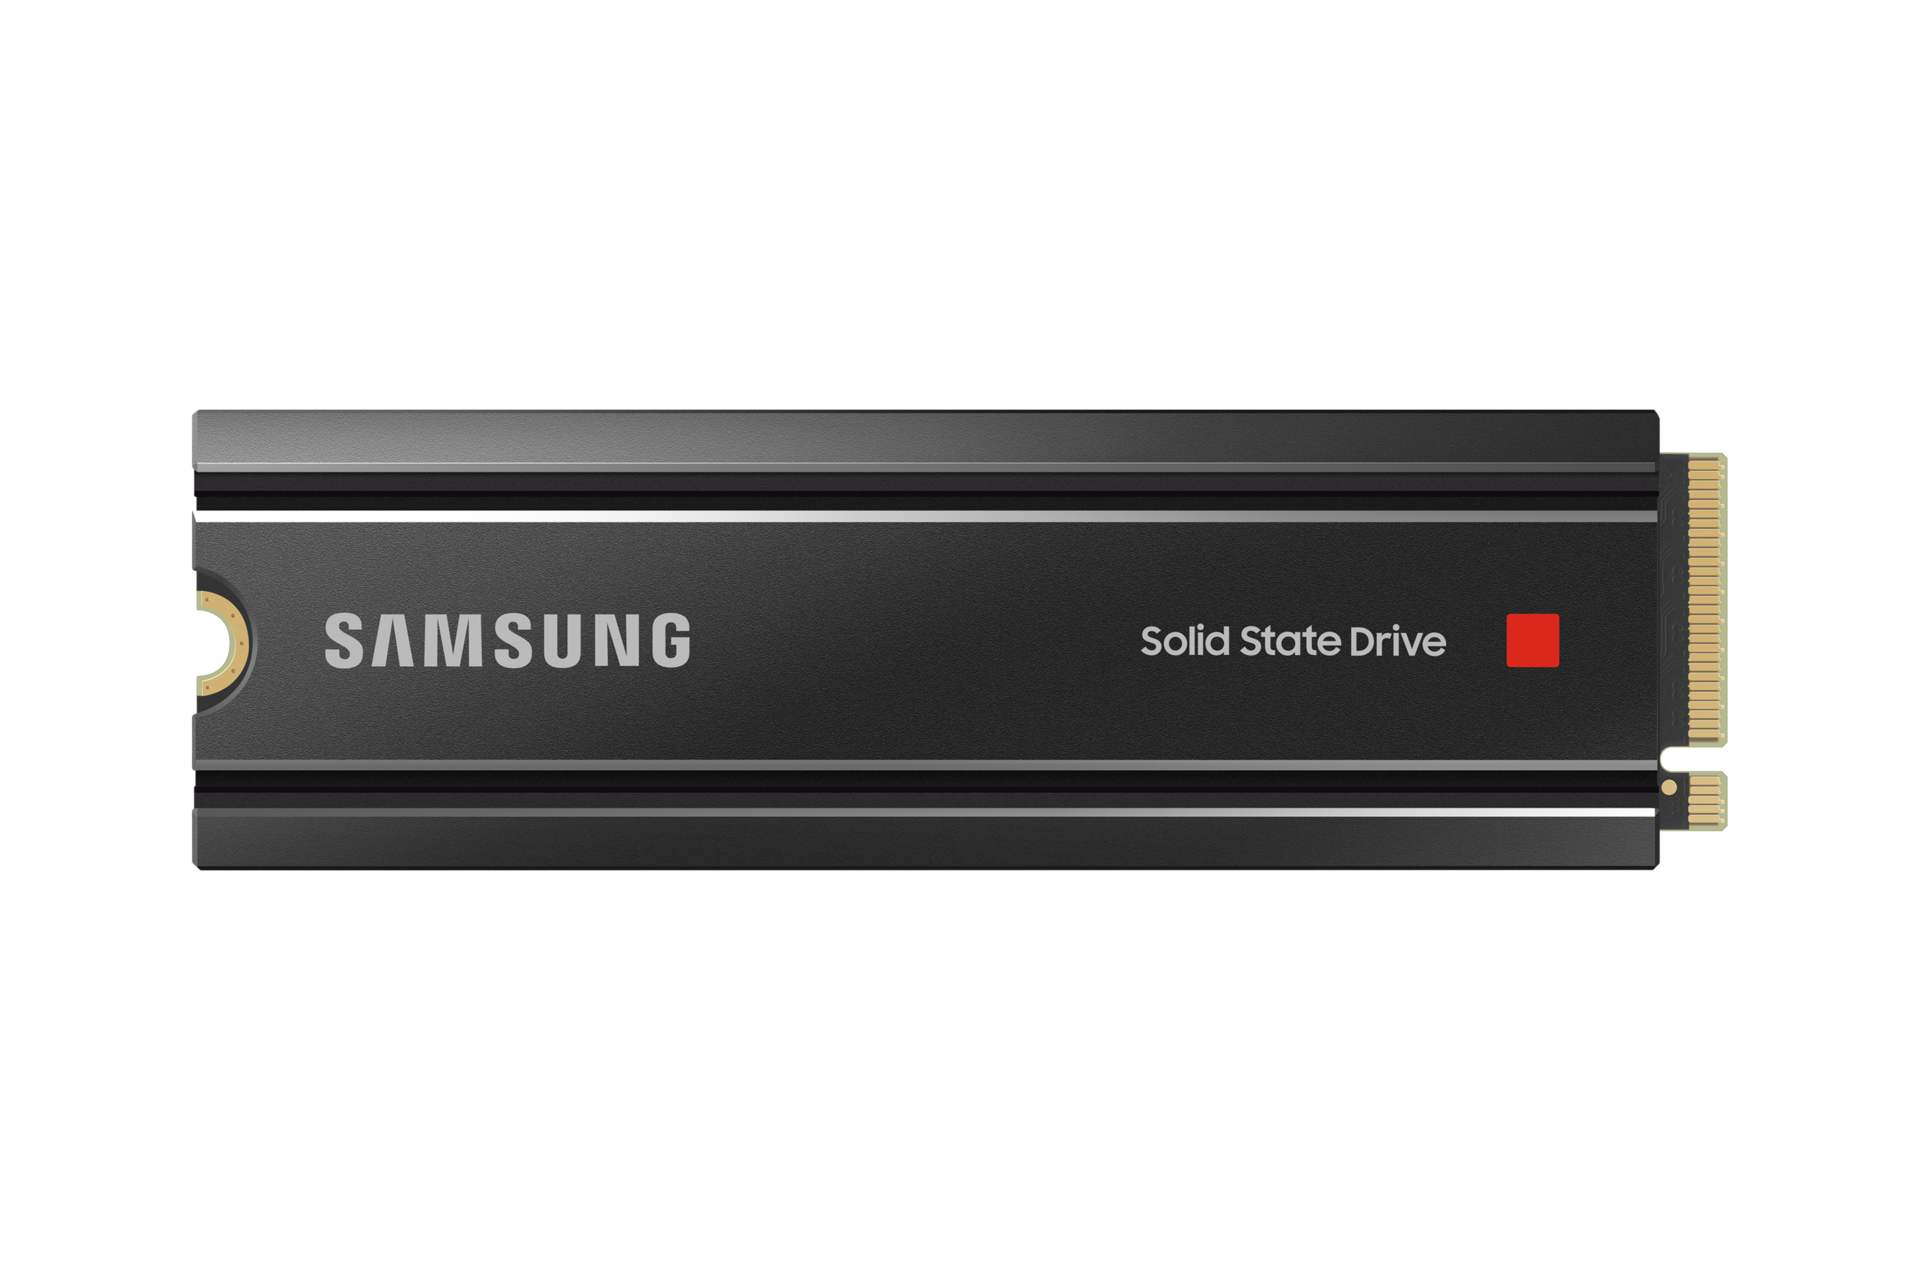 PS5 : voici la liste de tous les SSD M.2 compatibles avec la